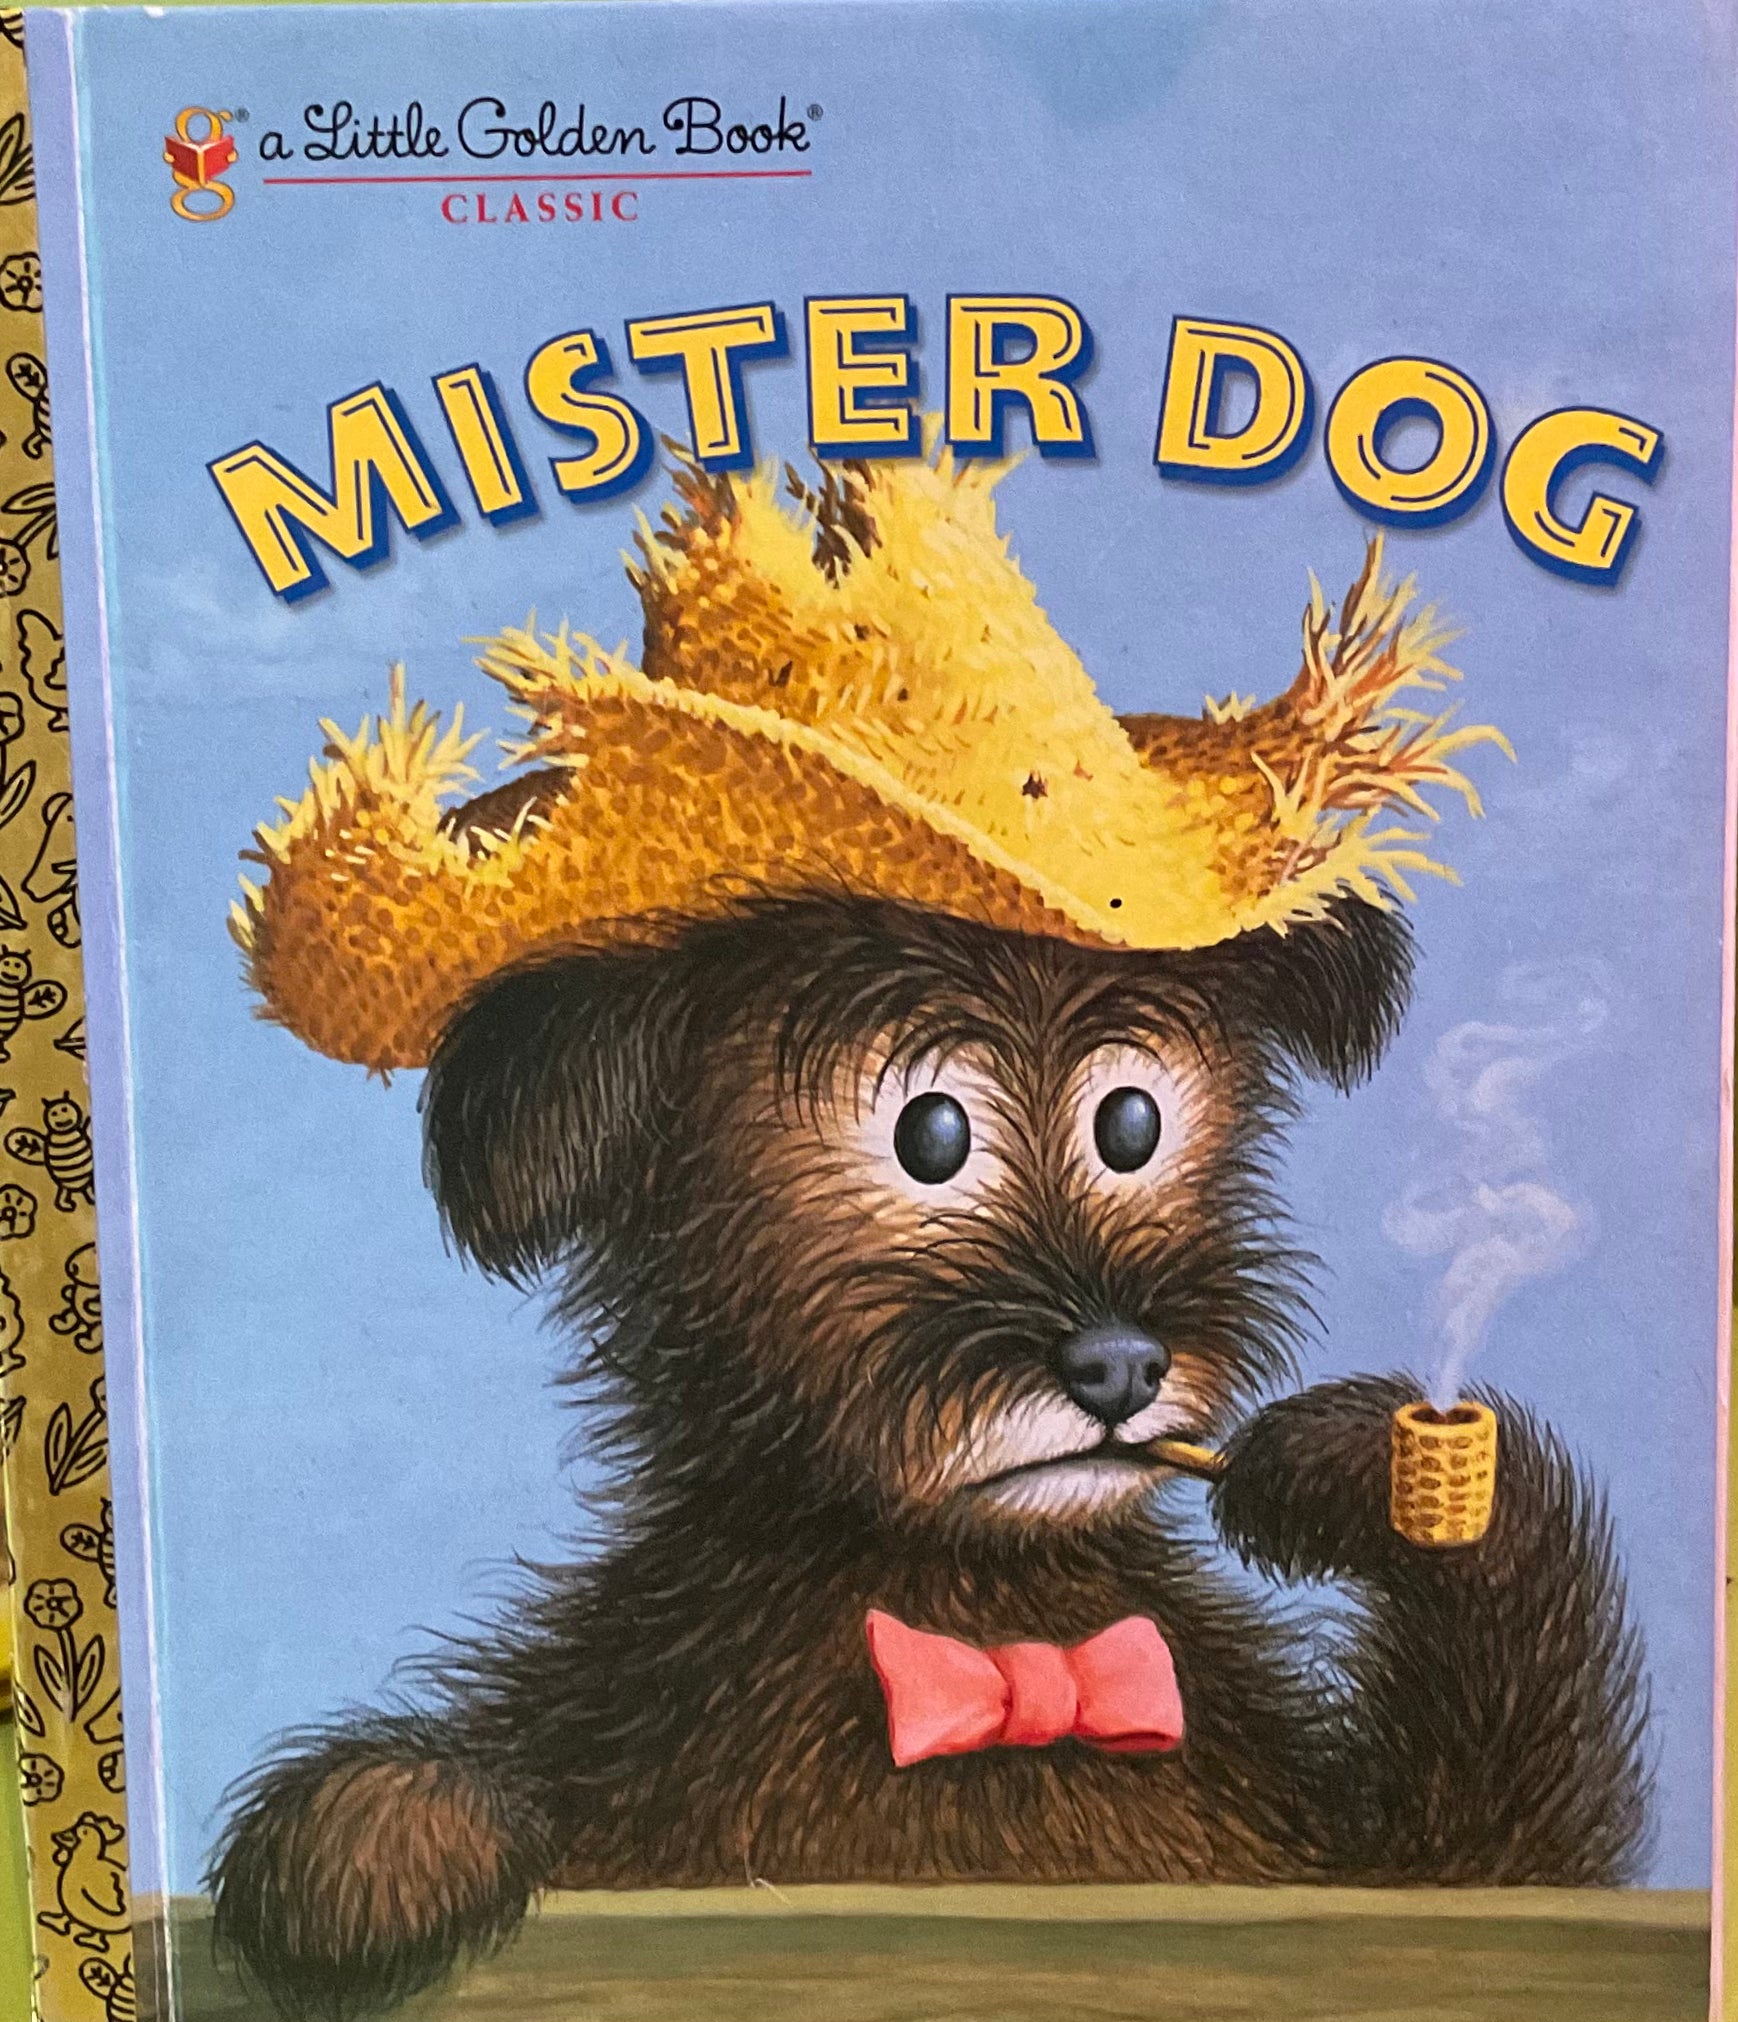 Mister Dog, Margaret Wise Brown